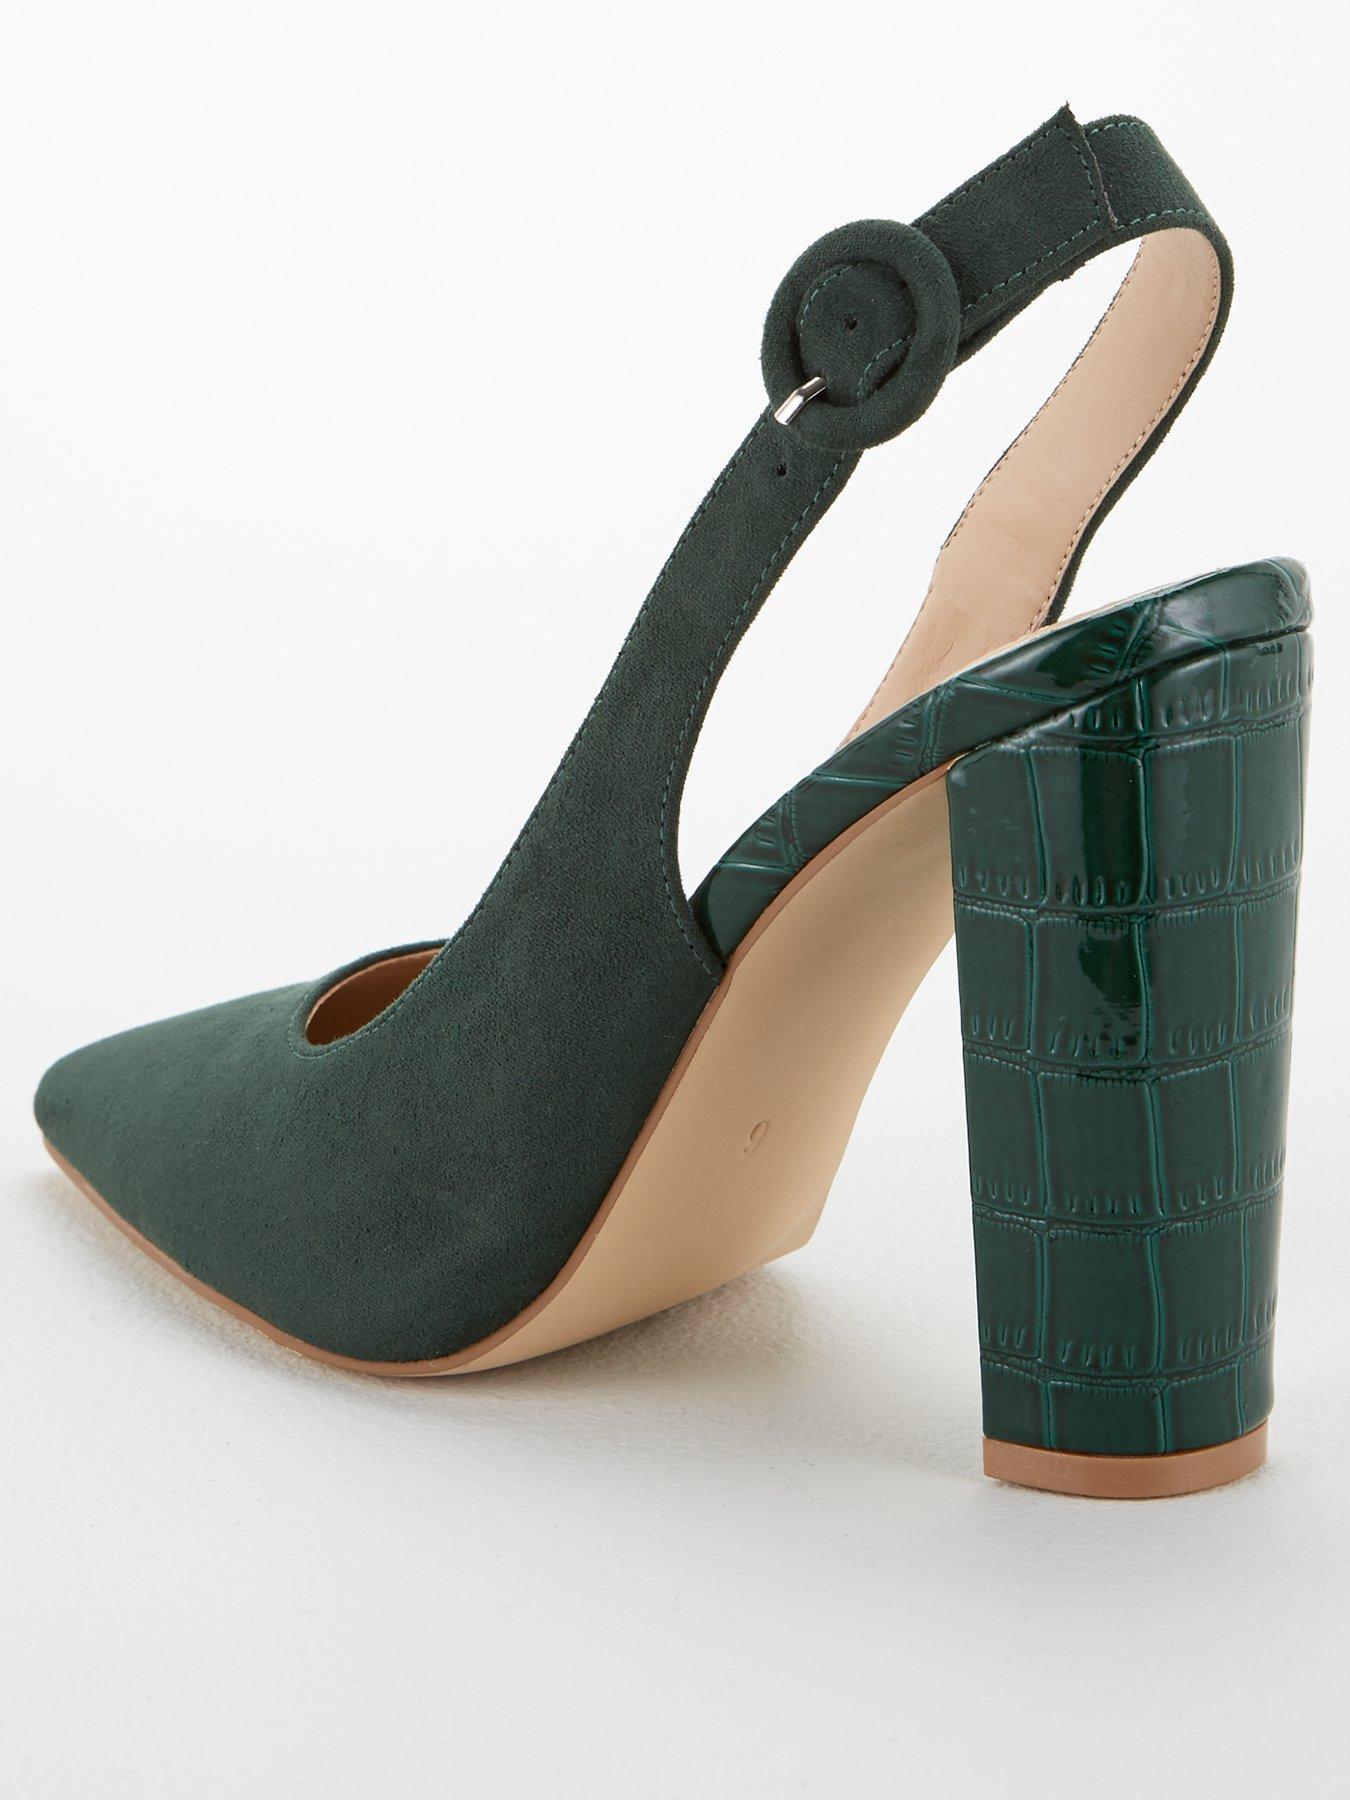 block heel green shoes